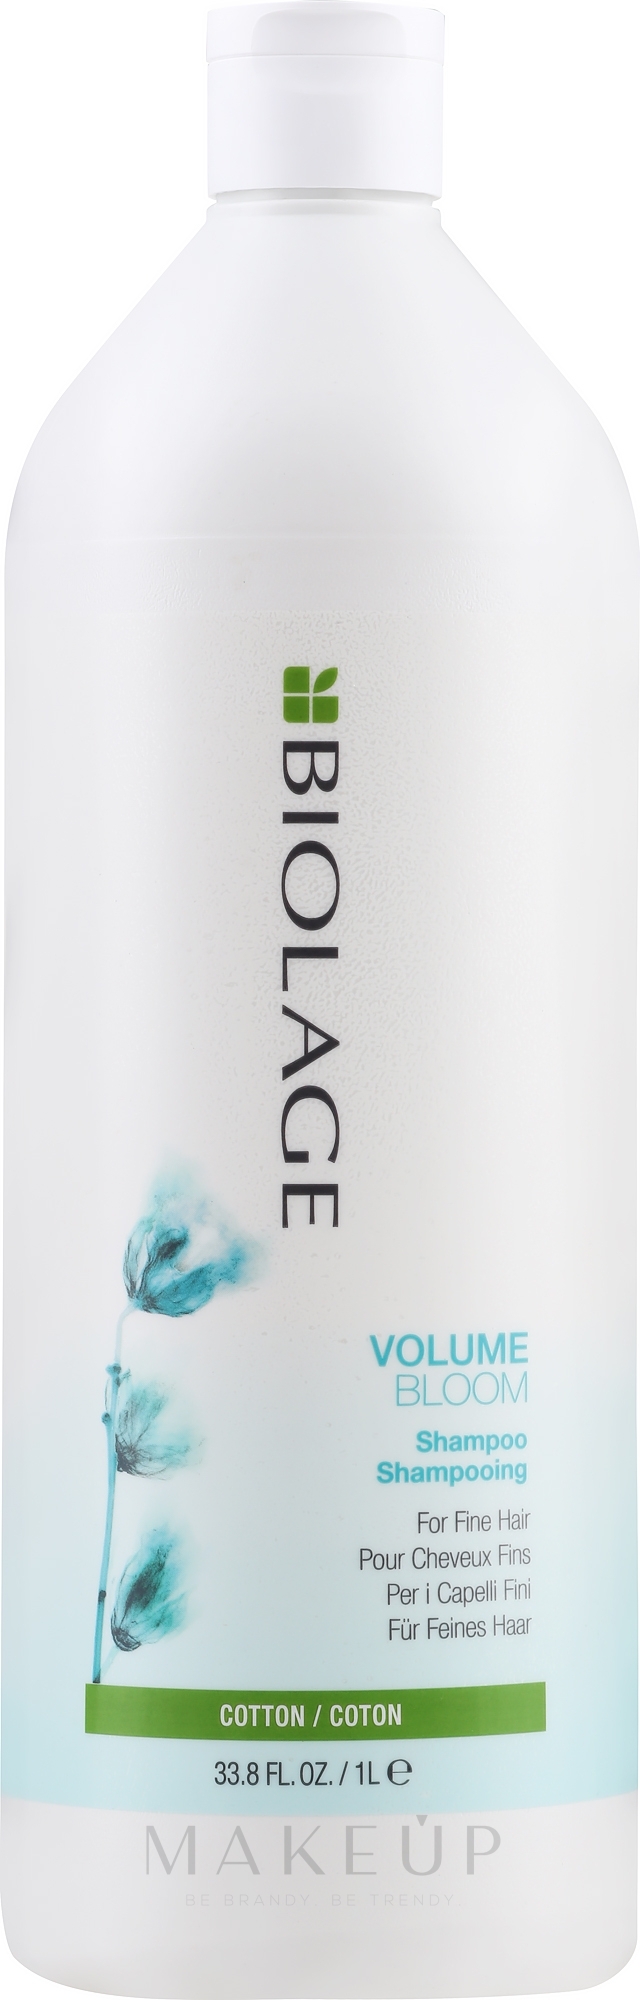 Volumebloom Shampoo für feines Haar - Biolage Volumebloom Cotton Shampoo — Bild 1000 ml